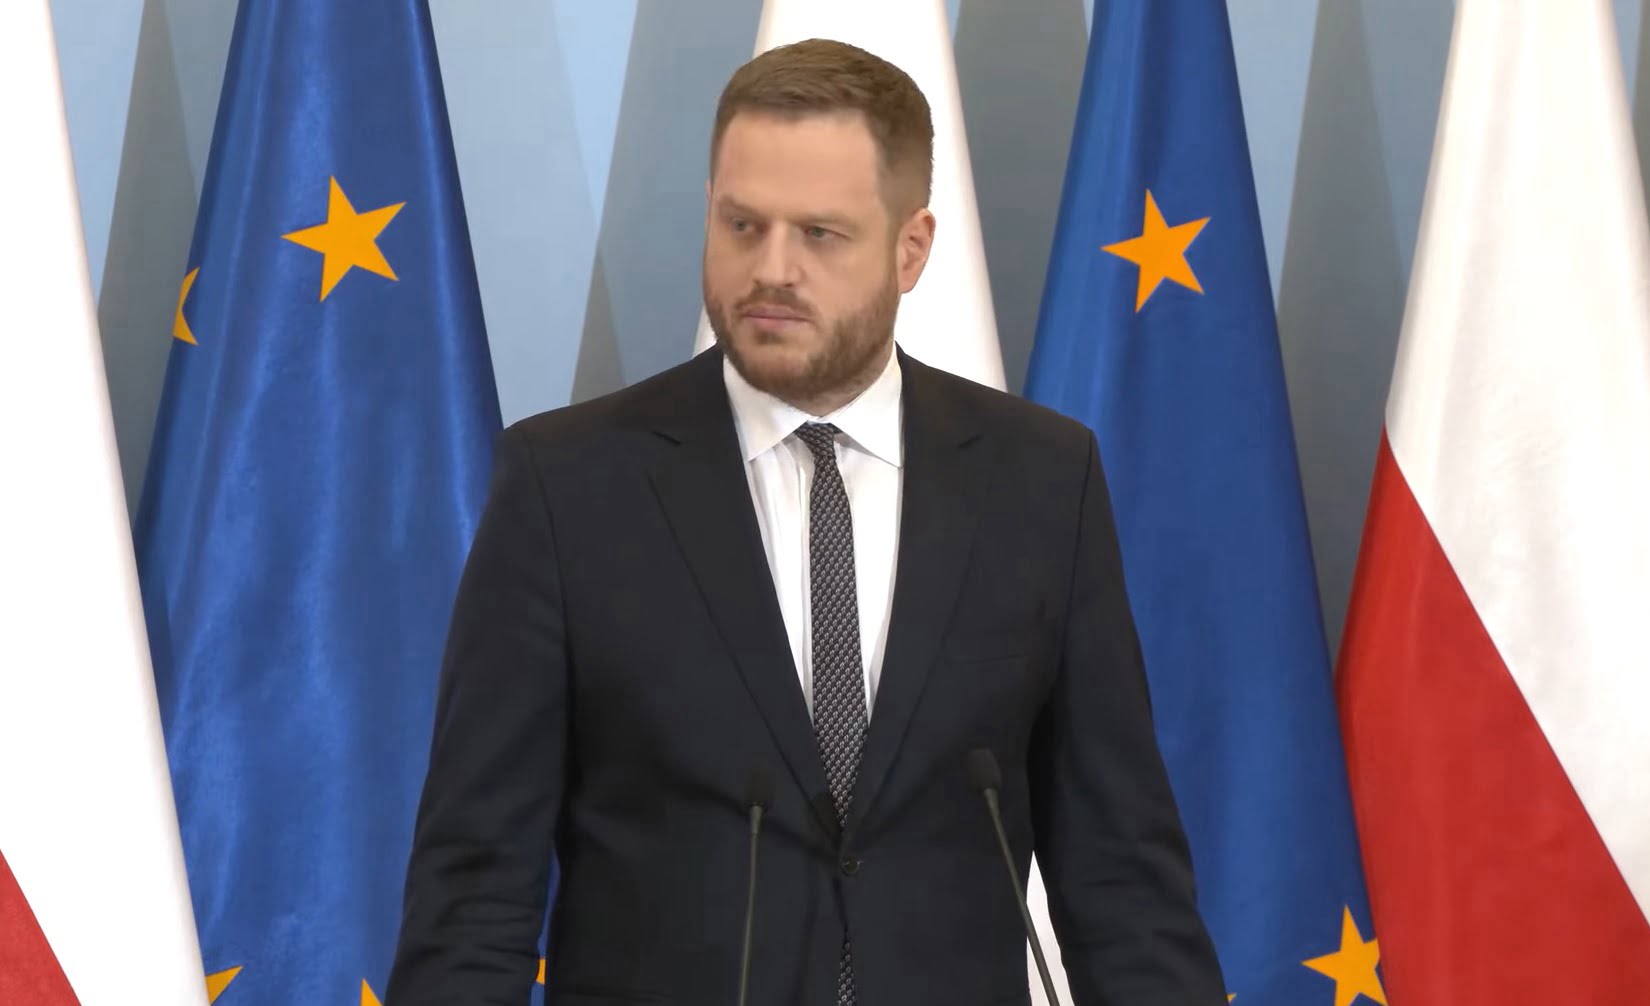 Janusz Cieszyński w garniturze stoi przed mikrofonami z flagami Unii Europejskiej i Polski w tle.